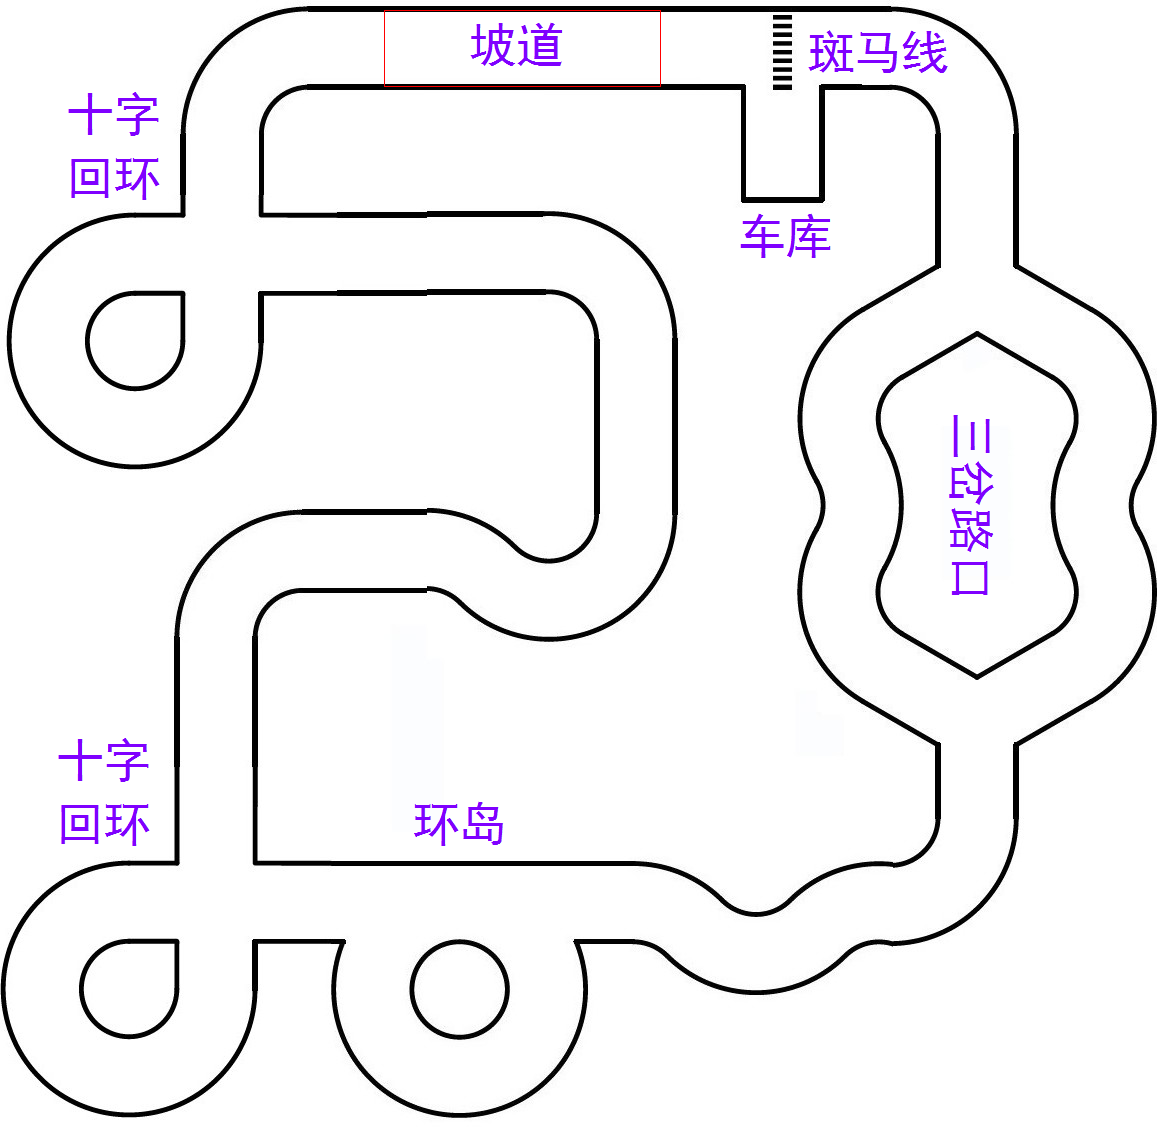 ▲ 图1.2.1 室内循环赛道示意图